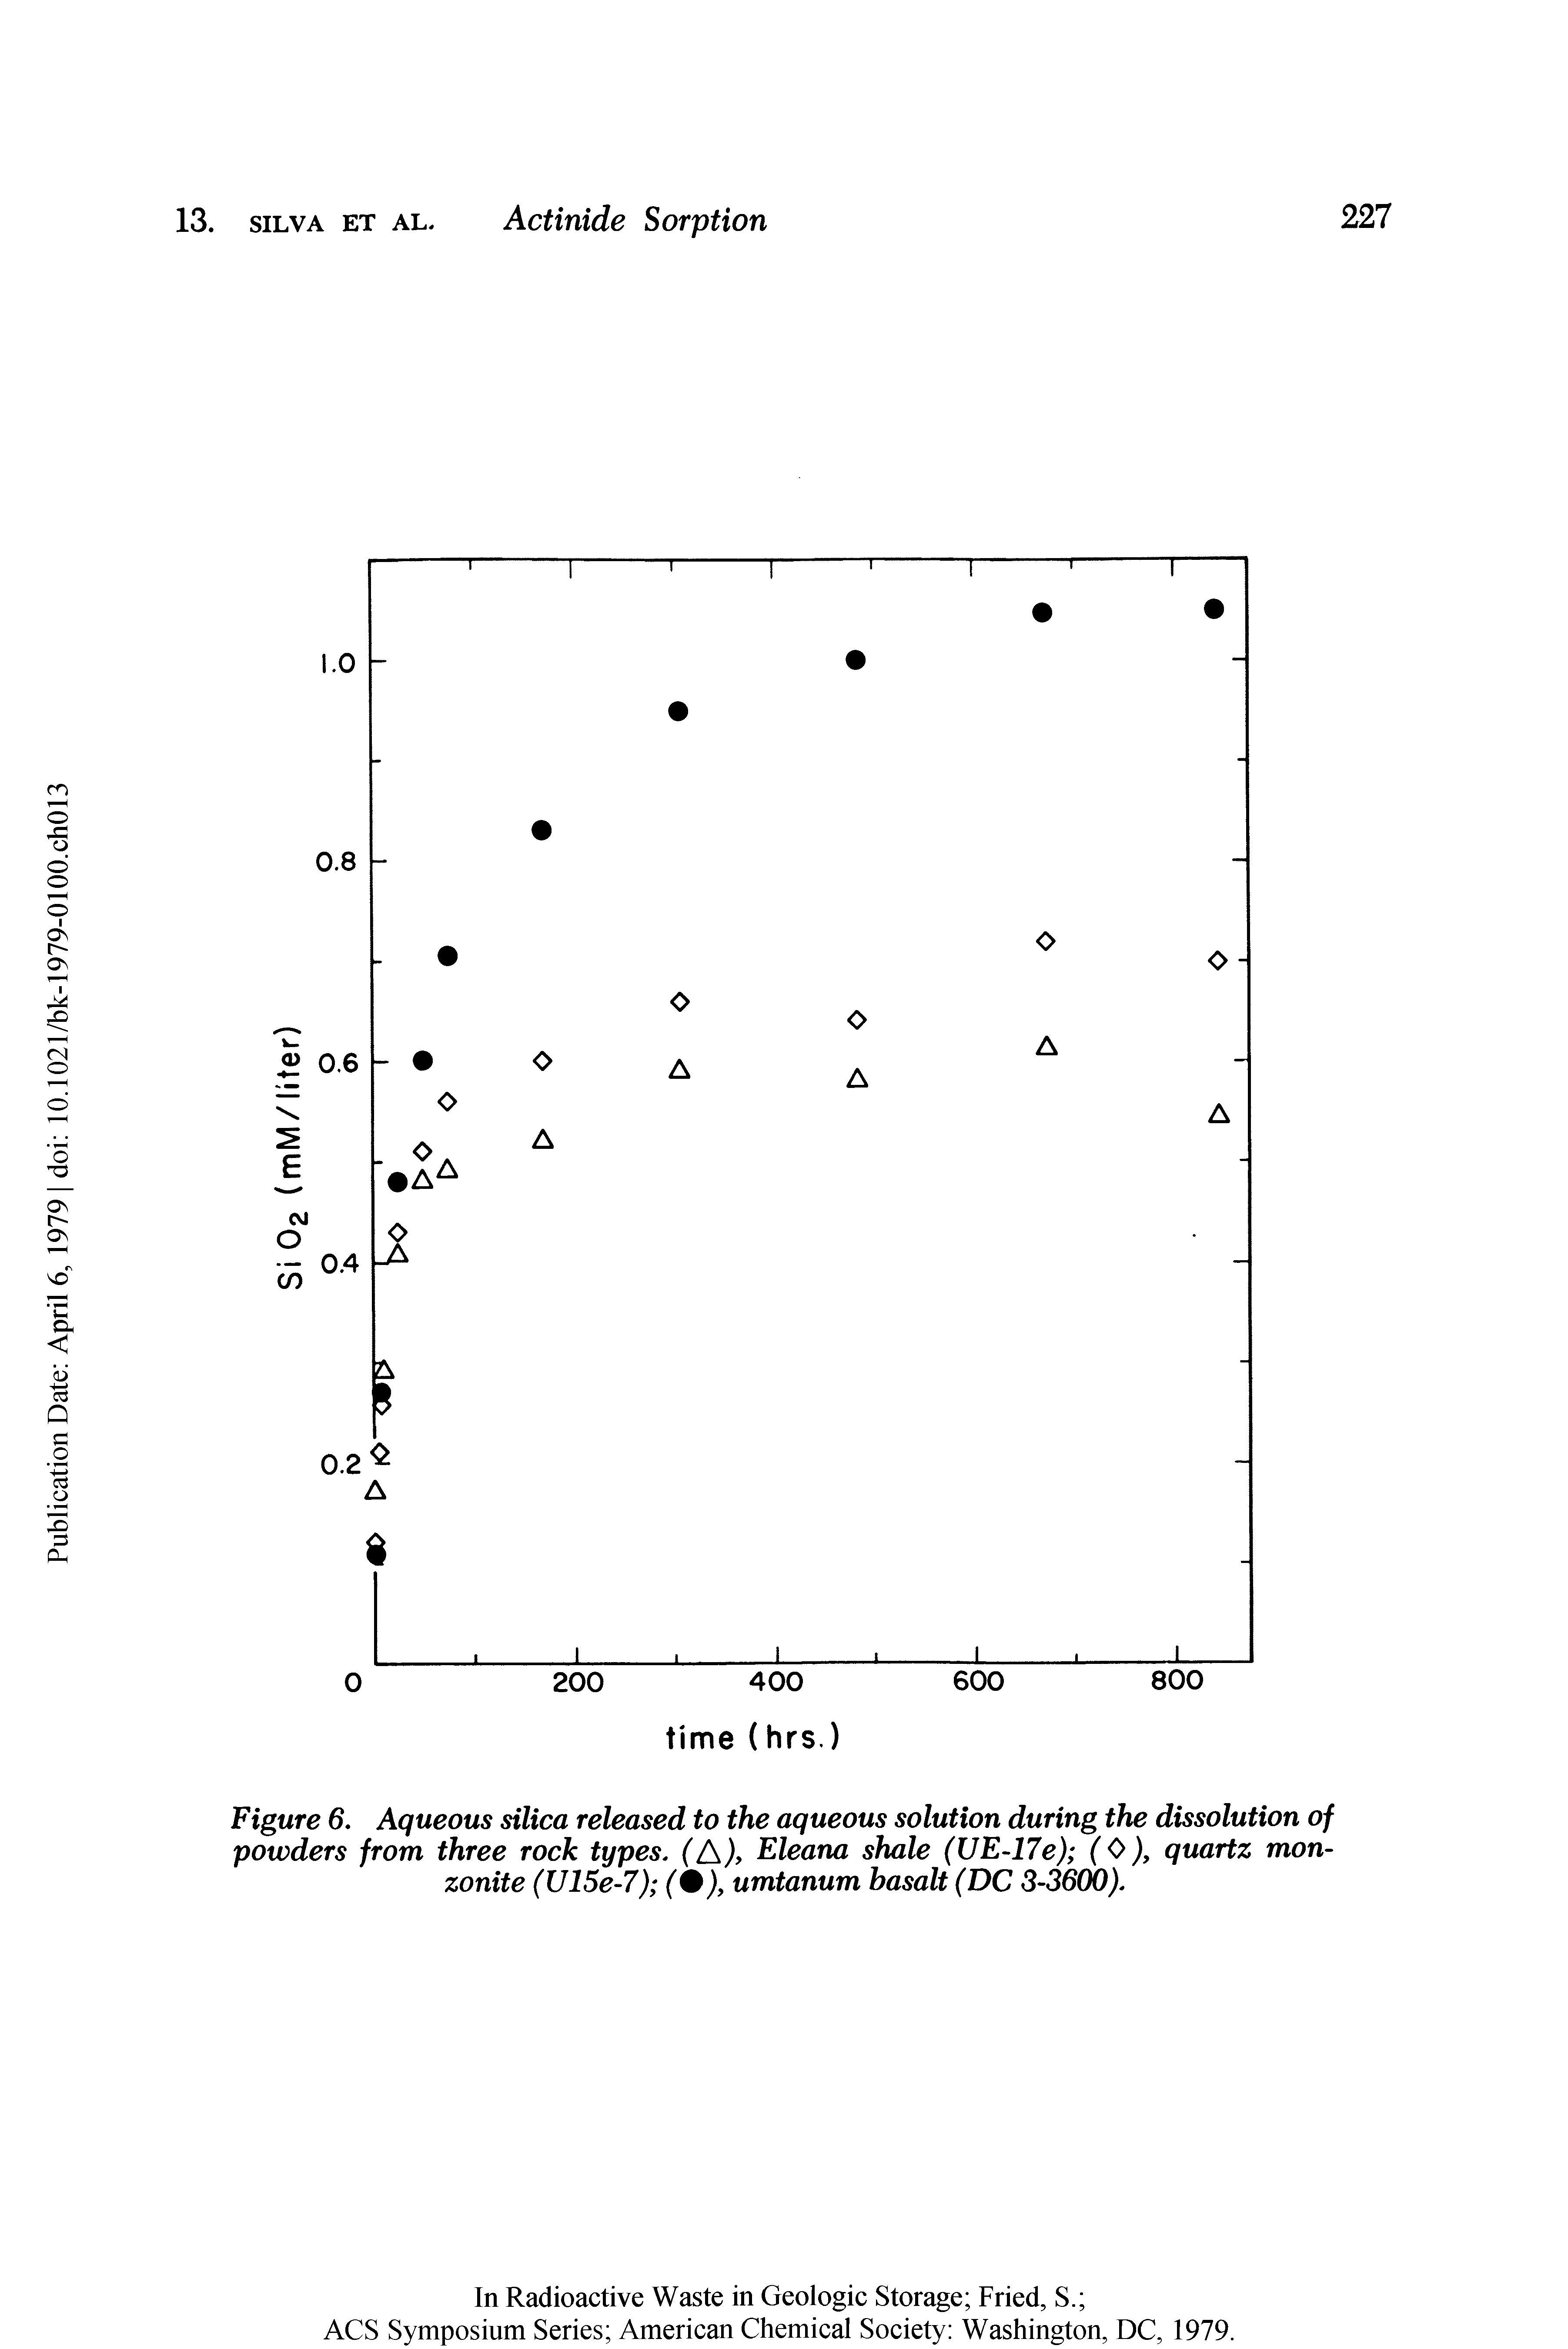 Figure 6, Aqueous silica released to the aqueous solution during the dissolution of powders from three rock types. (A/ Eleana shale (UE-17e) (0), quartz mon-zonite (U15e-7) umtanum basalt (DC 3-3600).